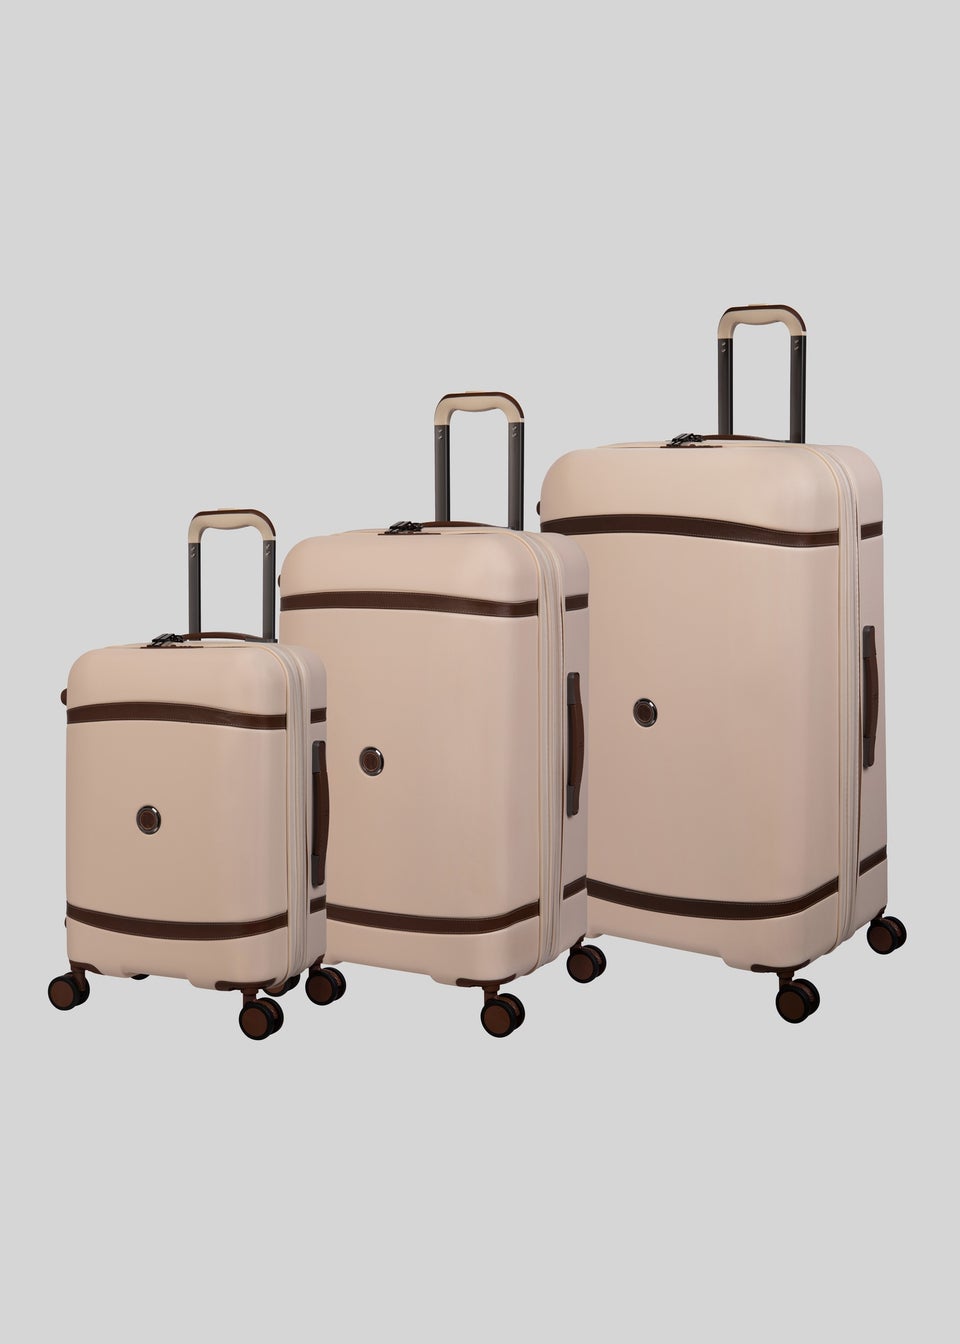 IT Luggage Cream Trunk Suitcases